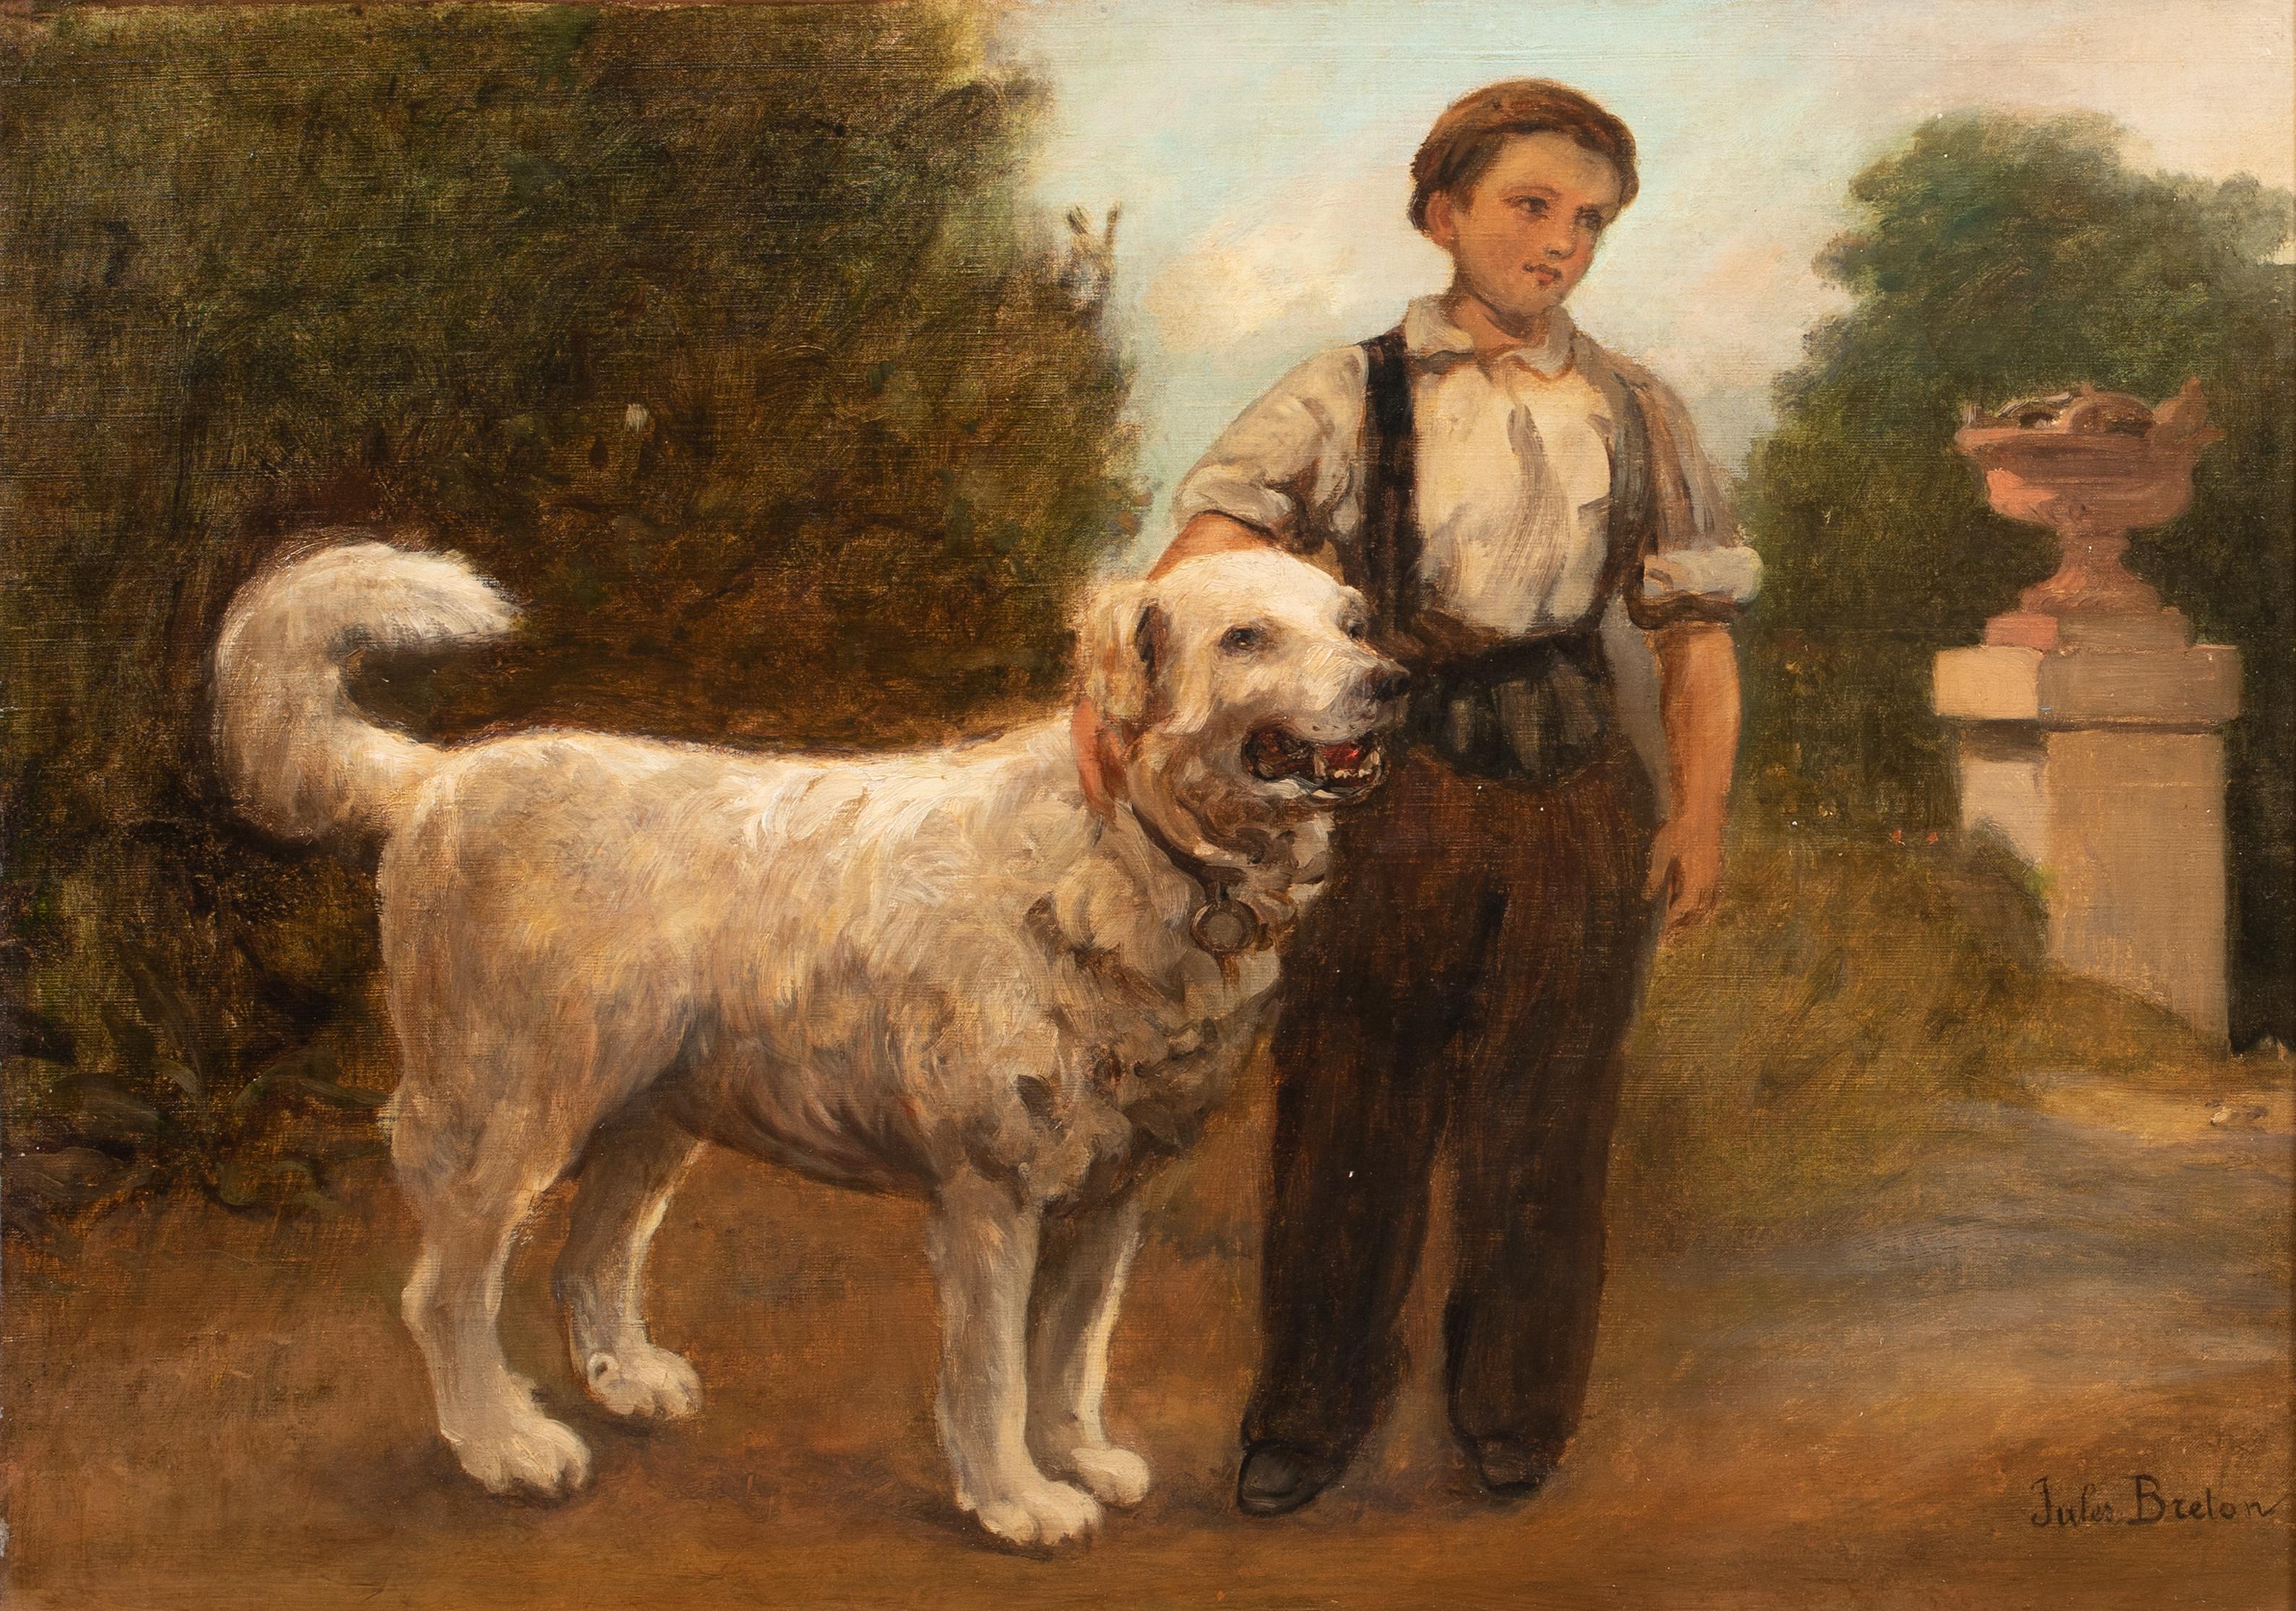 Garçon et son chien, 19ème siècle

de Jules BRETON (1827-1906) vendu à 1 500 000 $.

Grand portrait champêtre français du 19ème siècle d'un garçon et son chien, huile sur toile de Jules Breton. Grand portrait du XIXe siècle du garçon accompagné d'un